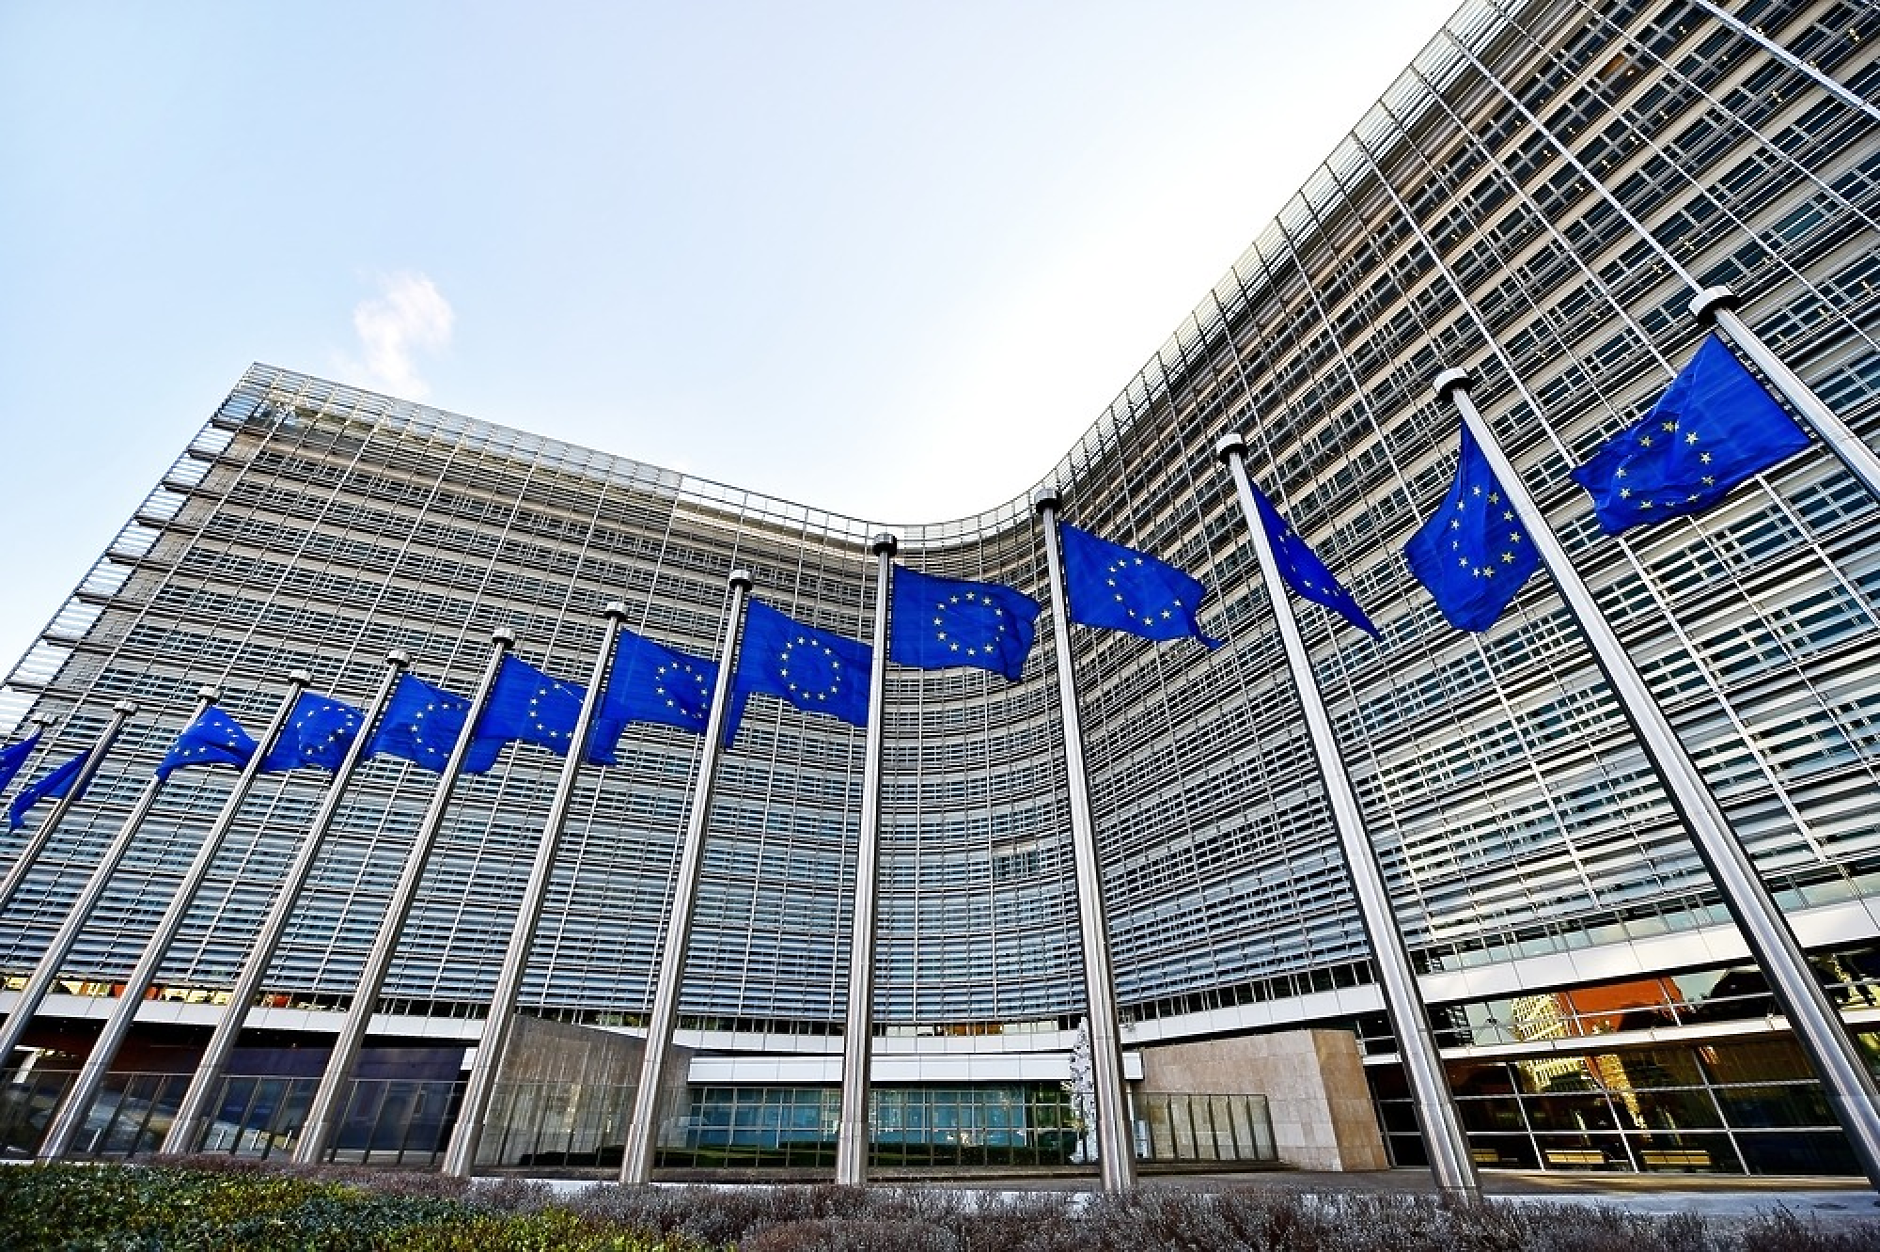 ЕС мобилизира значителни фондове за укрепване на външните си граници